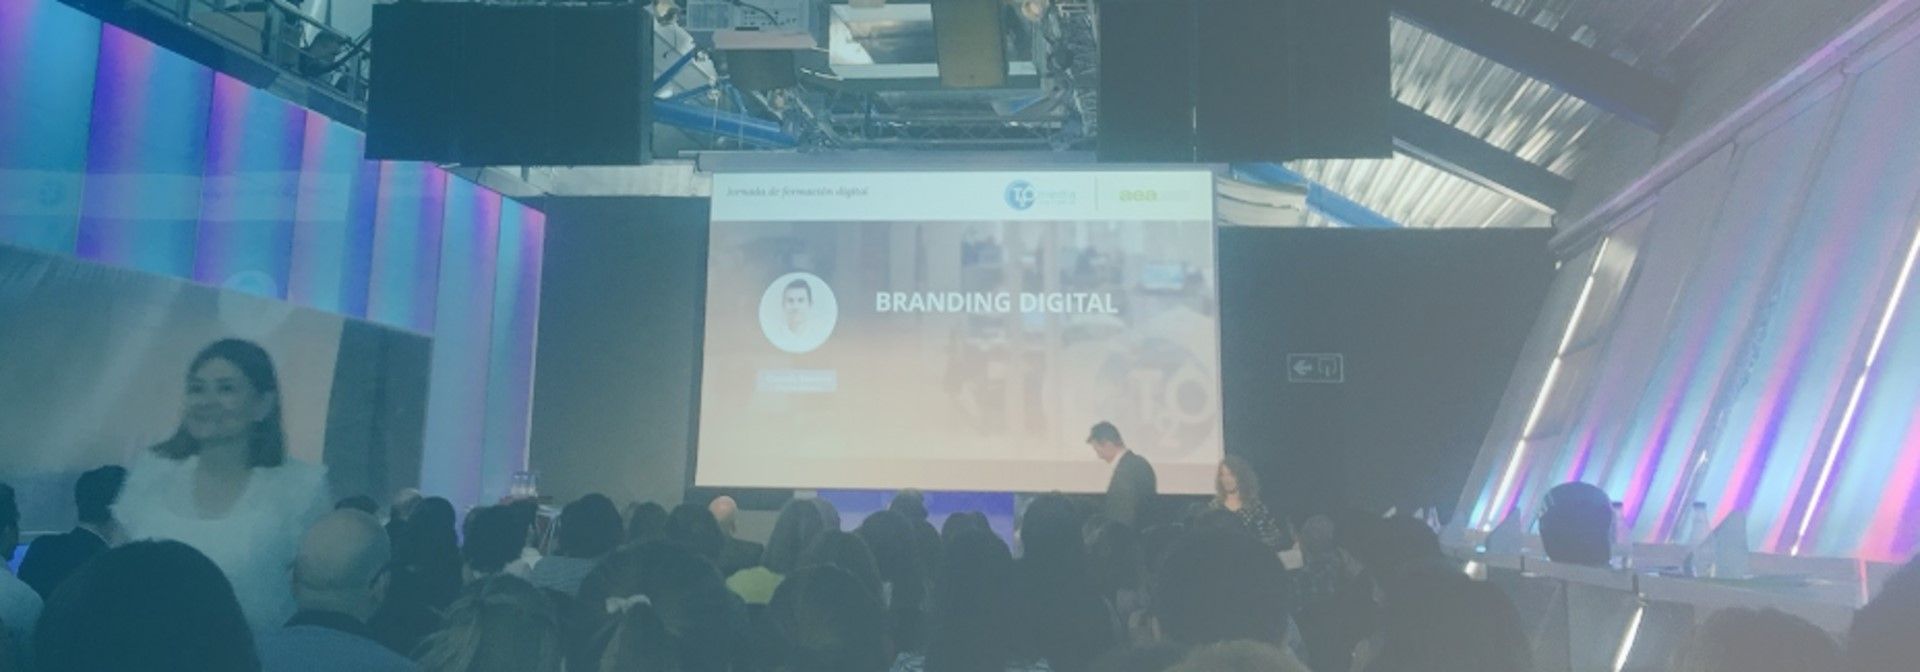 Presentación Branding Digital